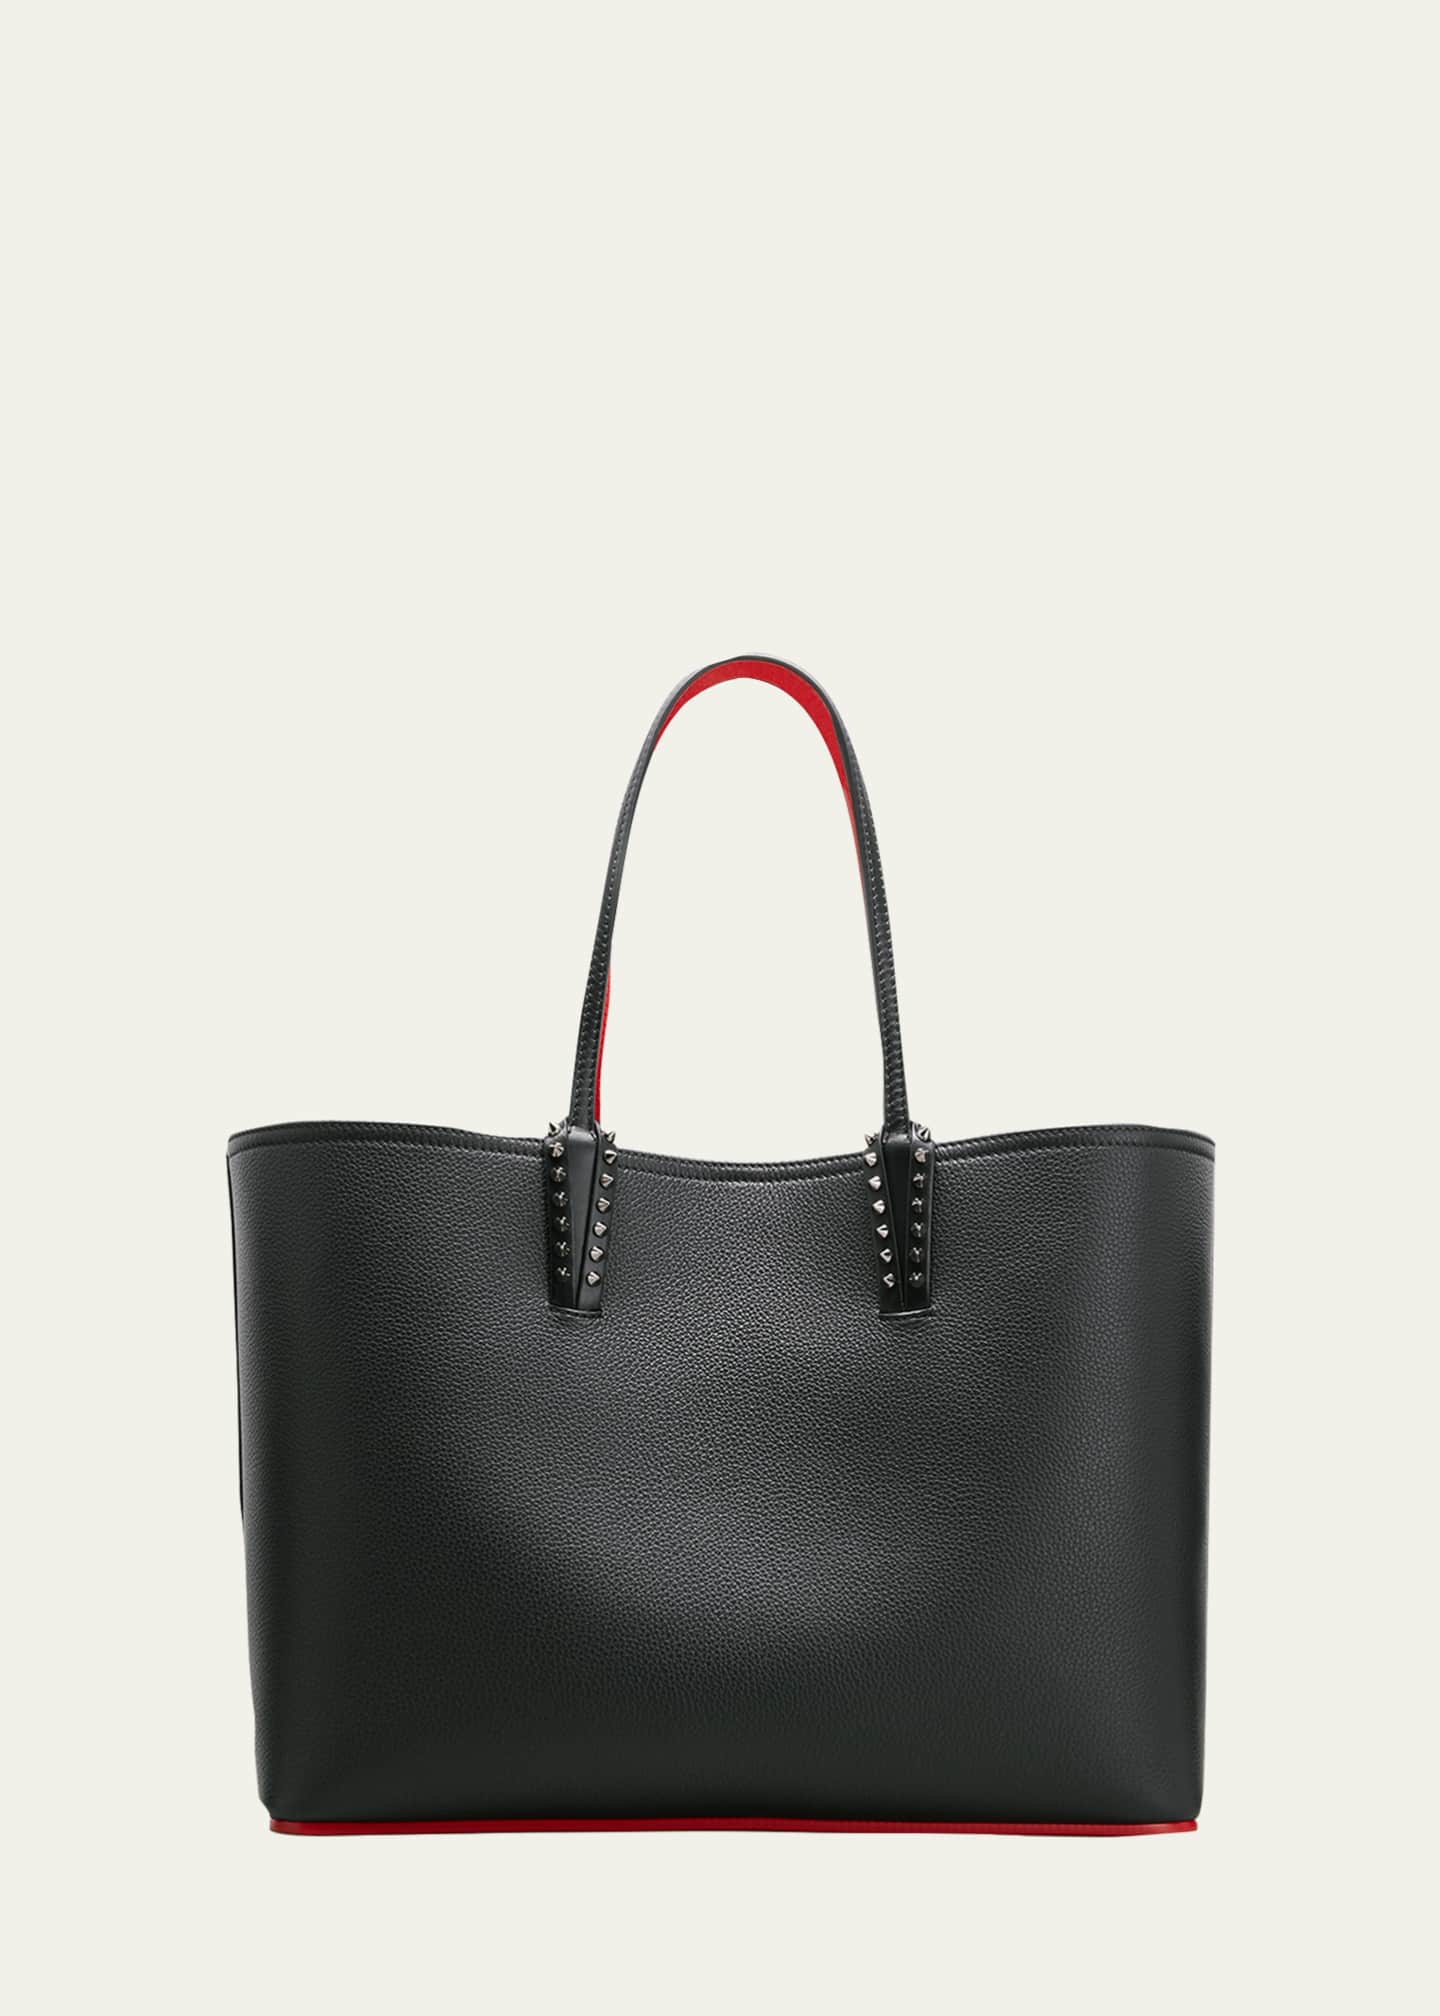 Women's Christian Louboutin Designer Handbags